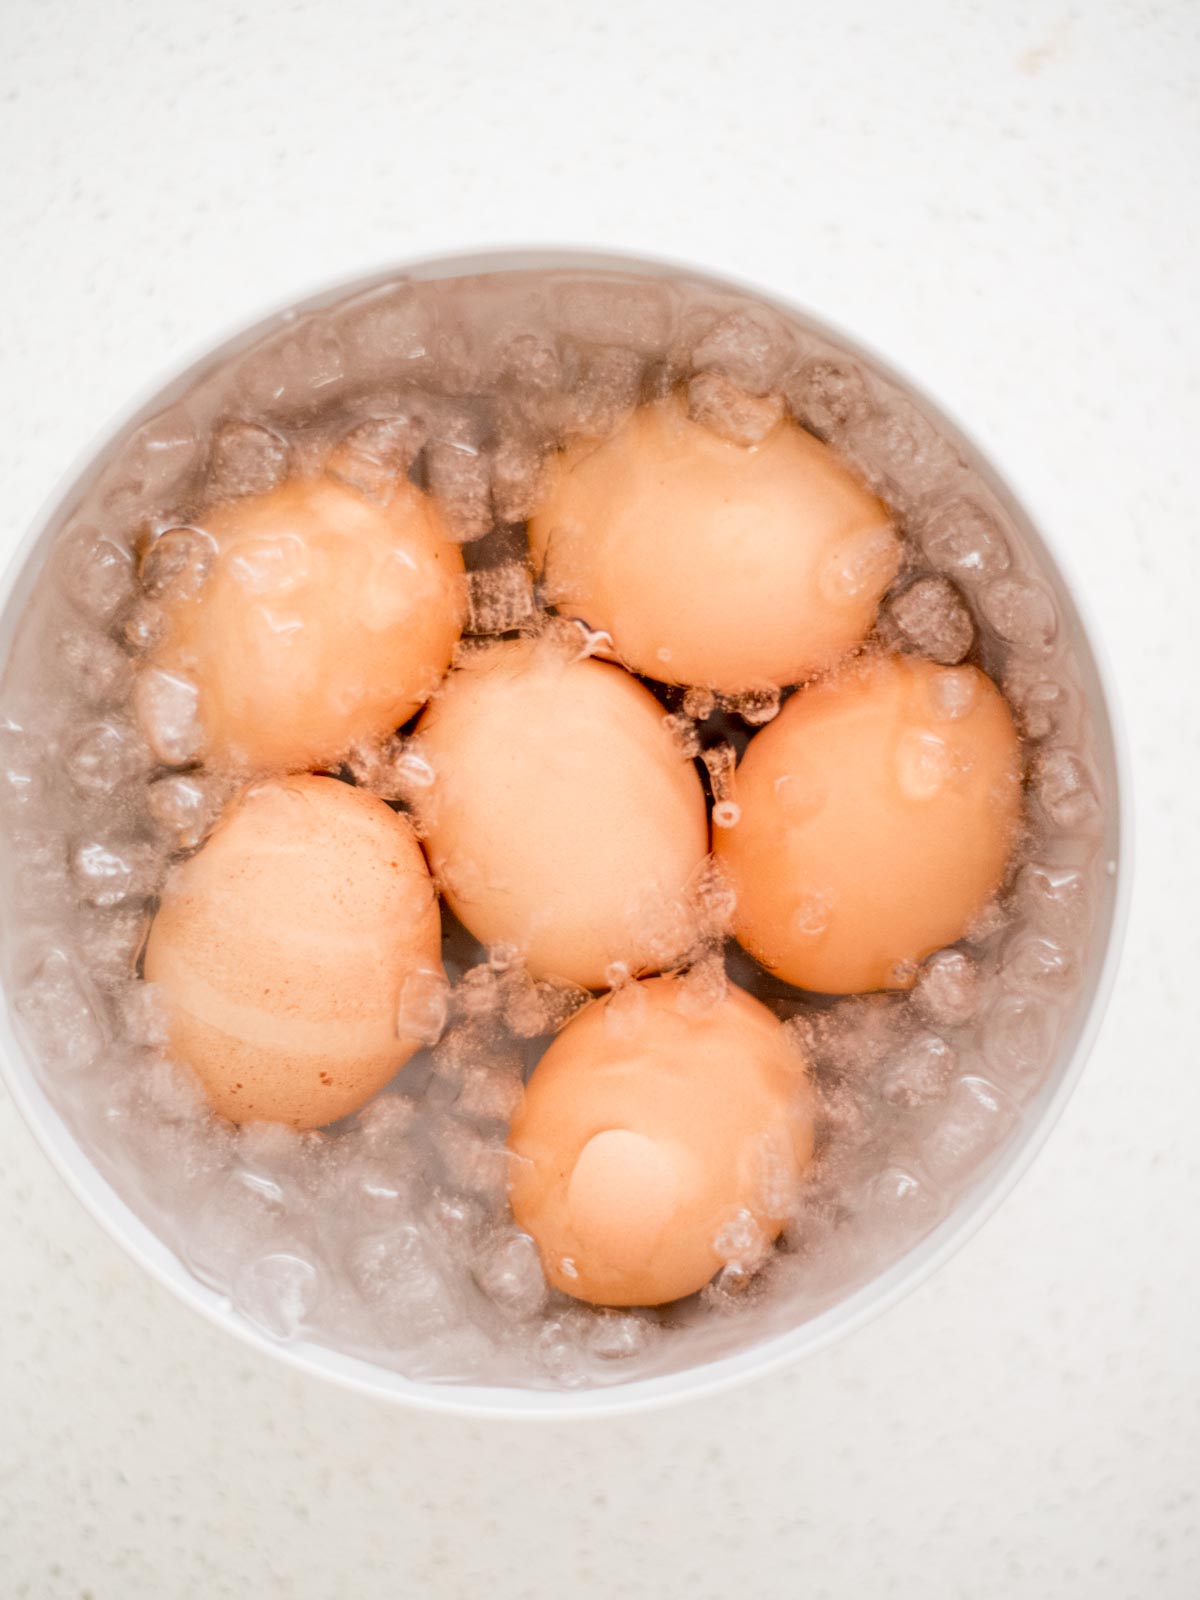 hard boiled eggs in an ice bath